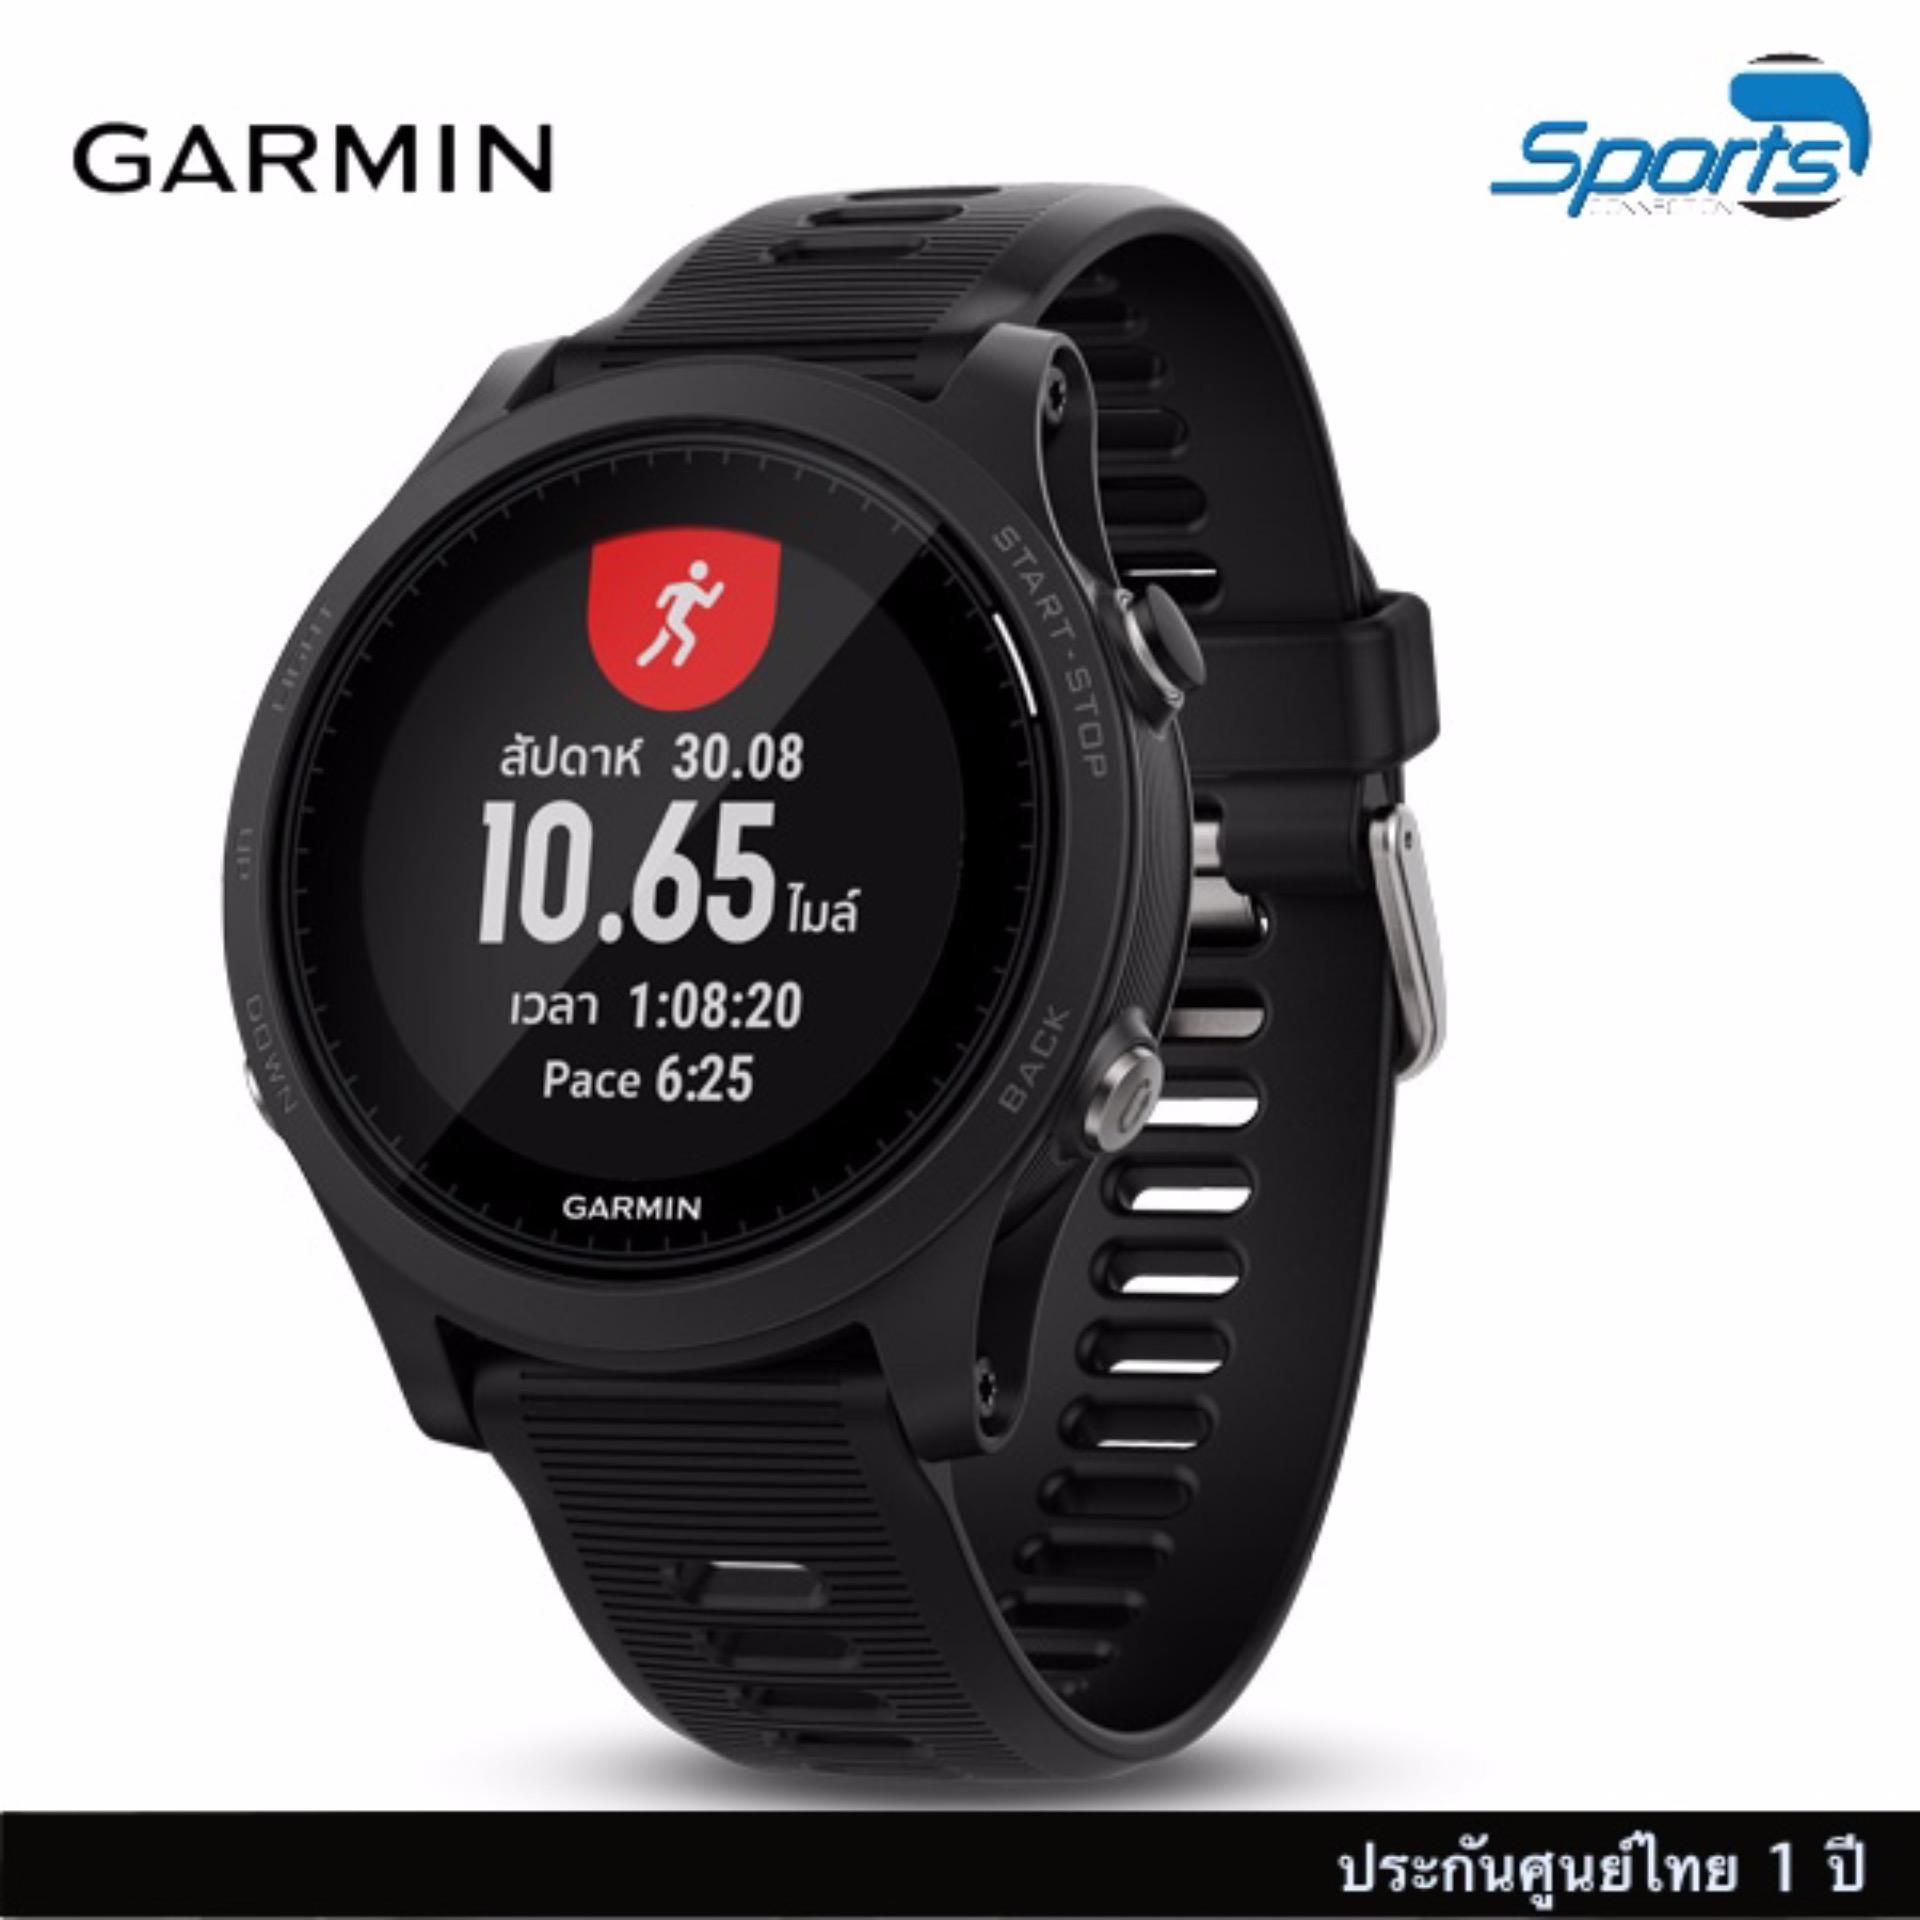 สอนใช้งาน  ปทุมธานี Garmin  Forerunner 935 นาฬิกาวิ่ง/ไตรกีฬาระบบ GPS ระดับพรีเมียมพร้อมการวัดอัตราการเต้นหัวใจที่ข้อมือ¹